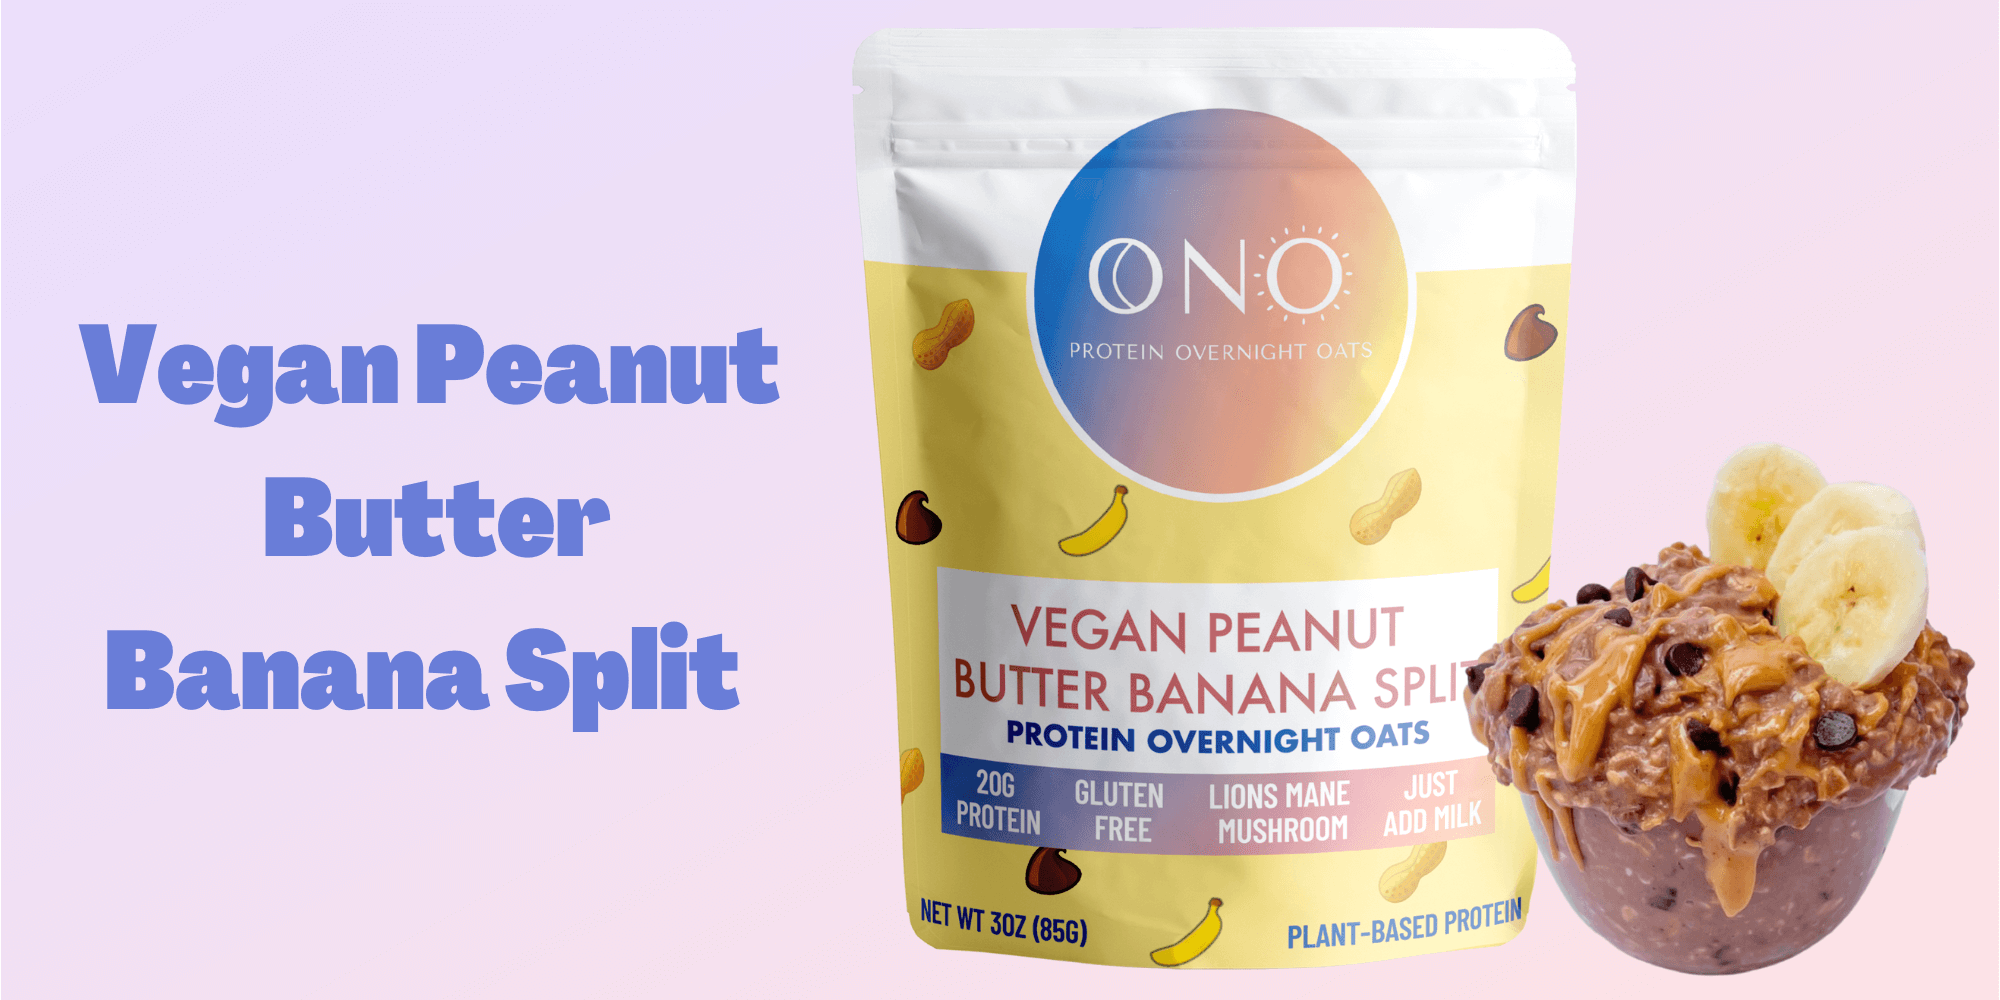 Vegan Peanut Butter Banana Split